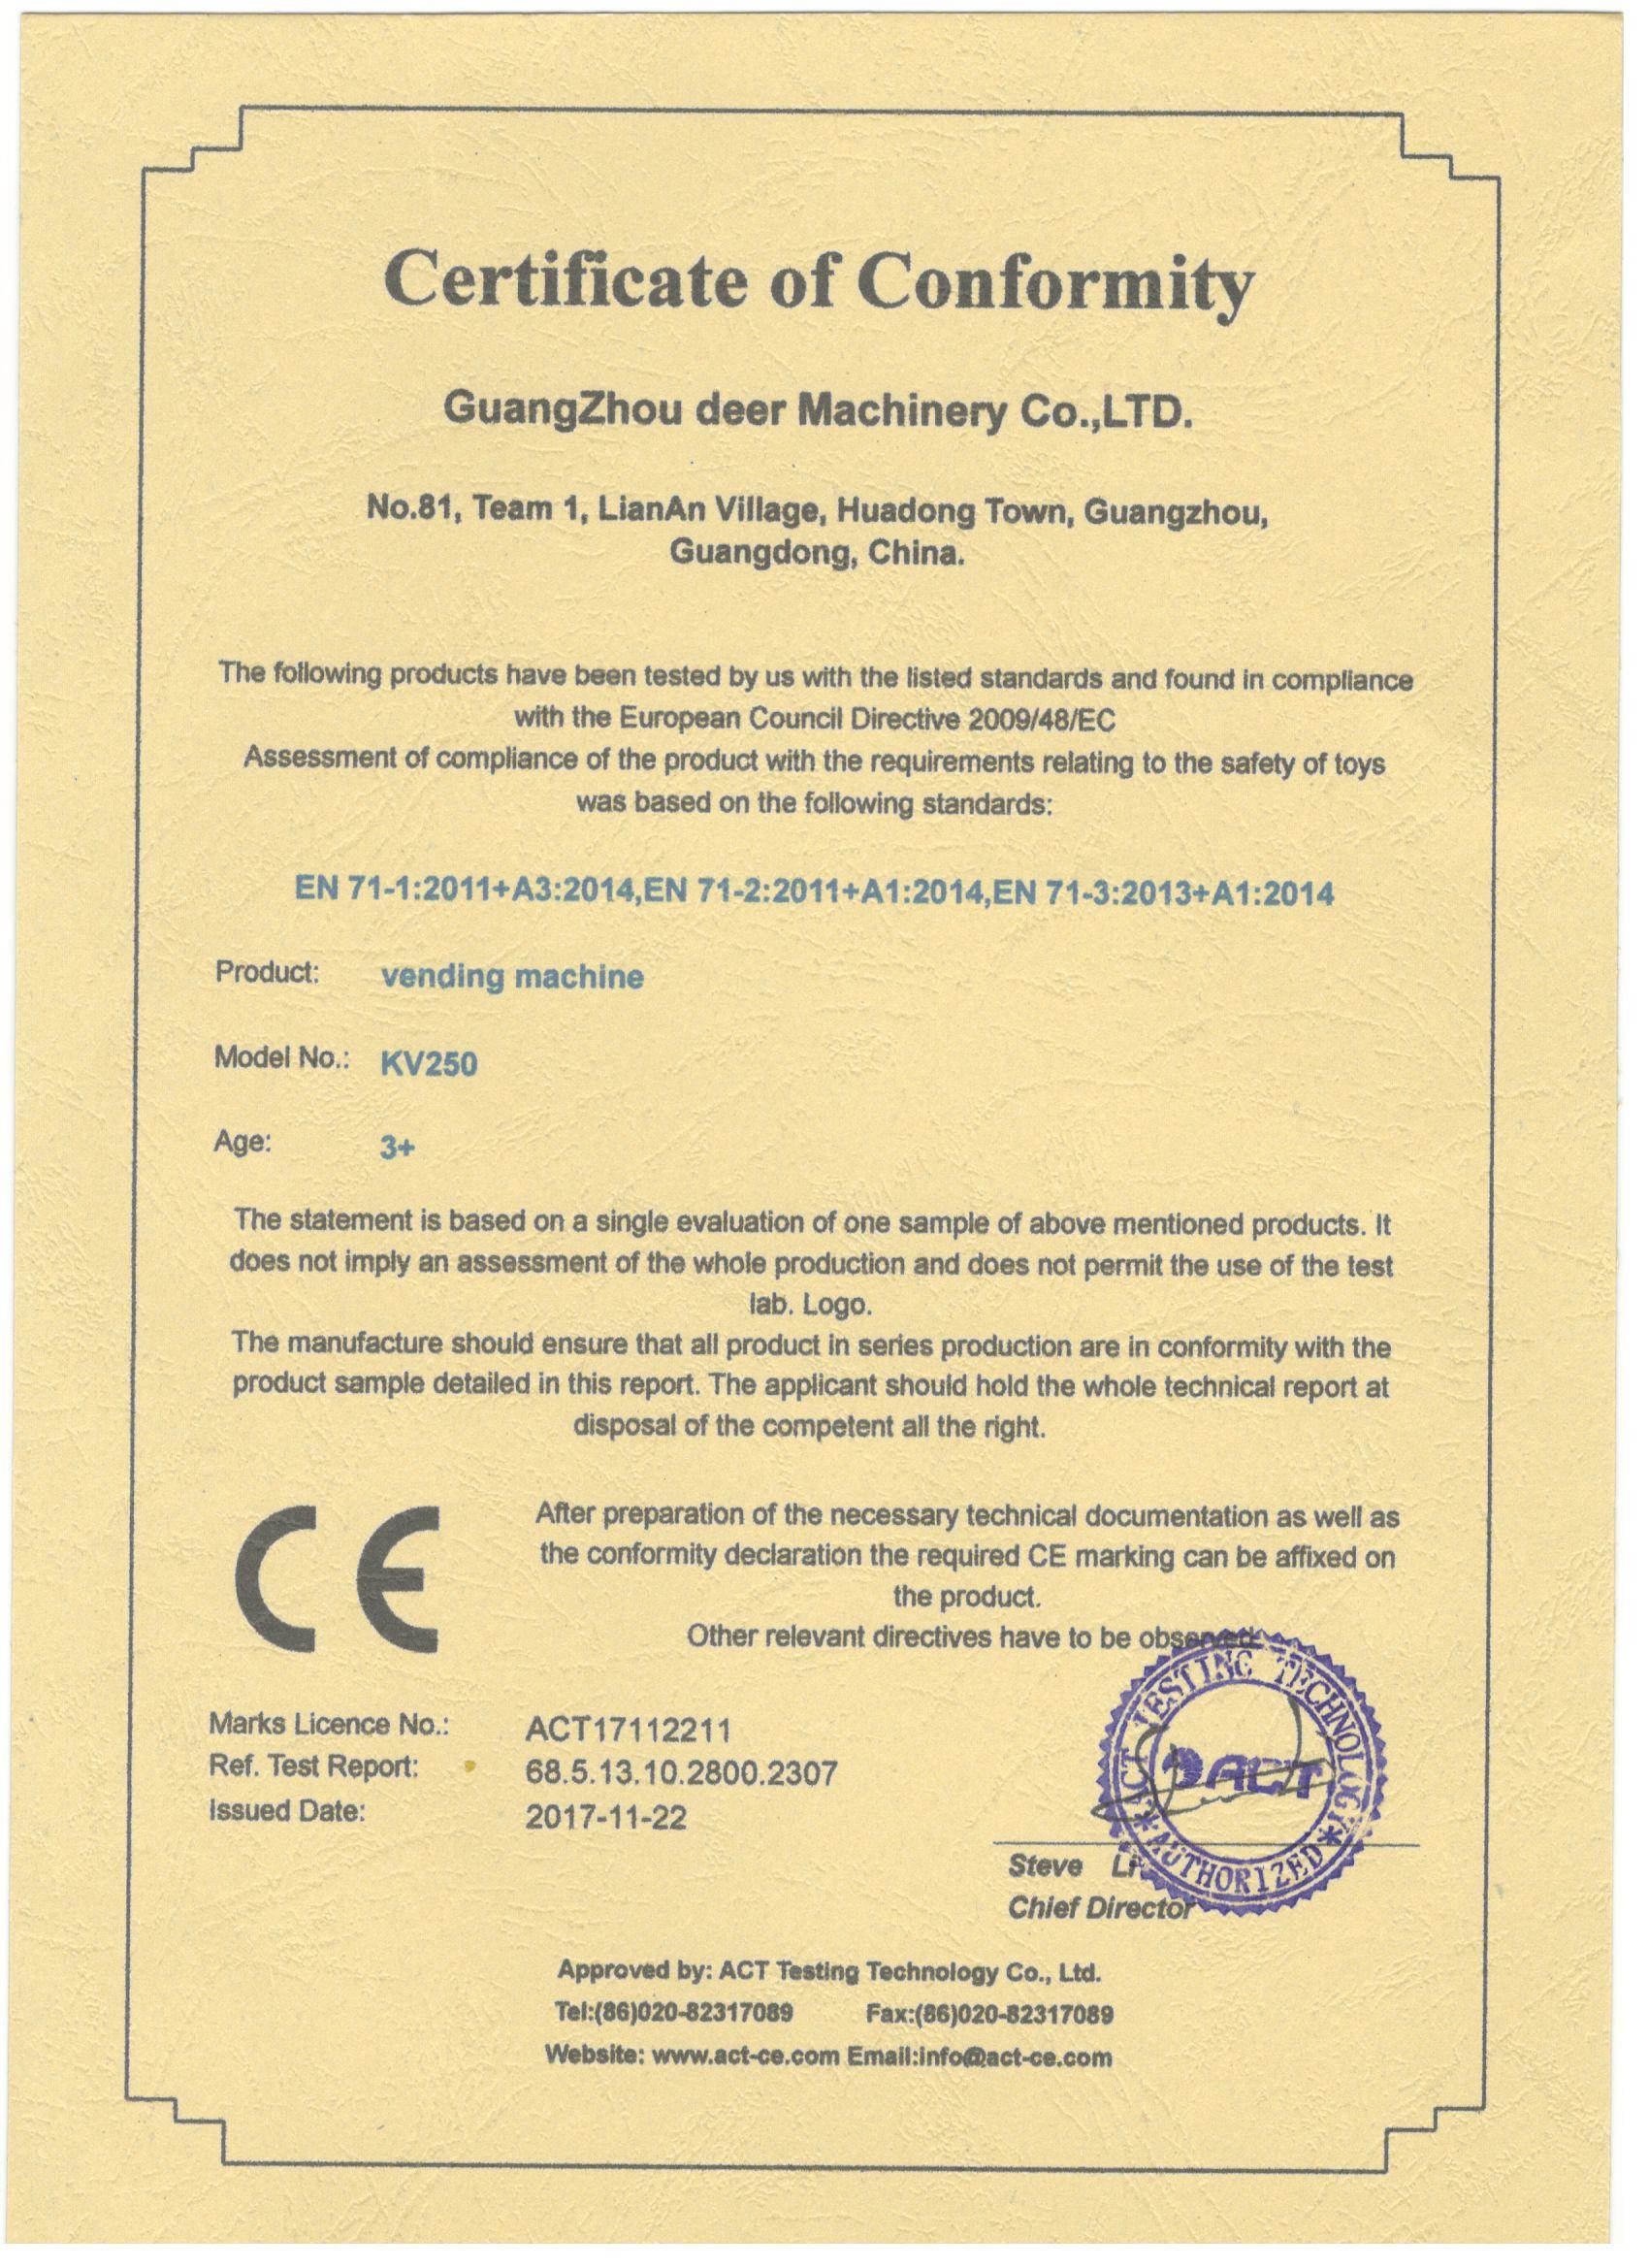 الصين Guangzhou Deer Machinery Co., Ltd. الشهادات